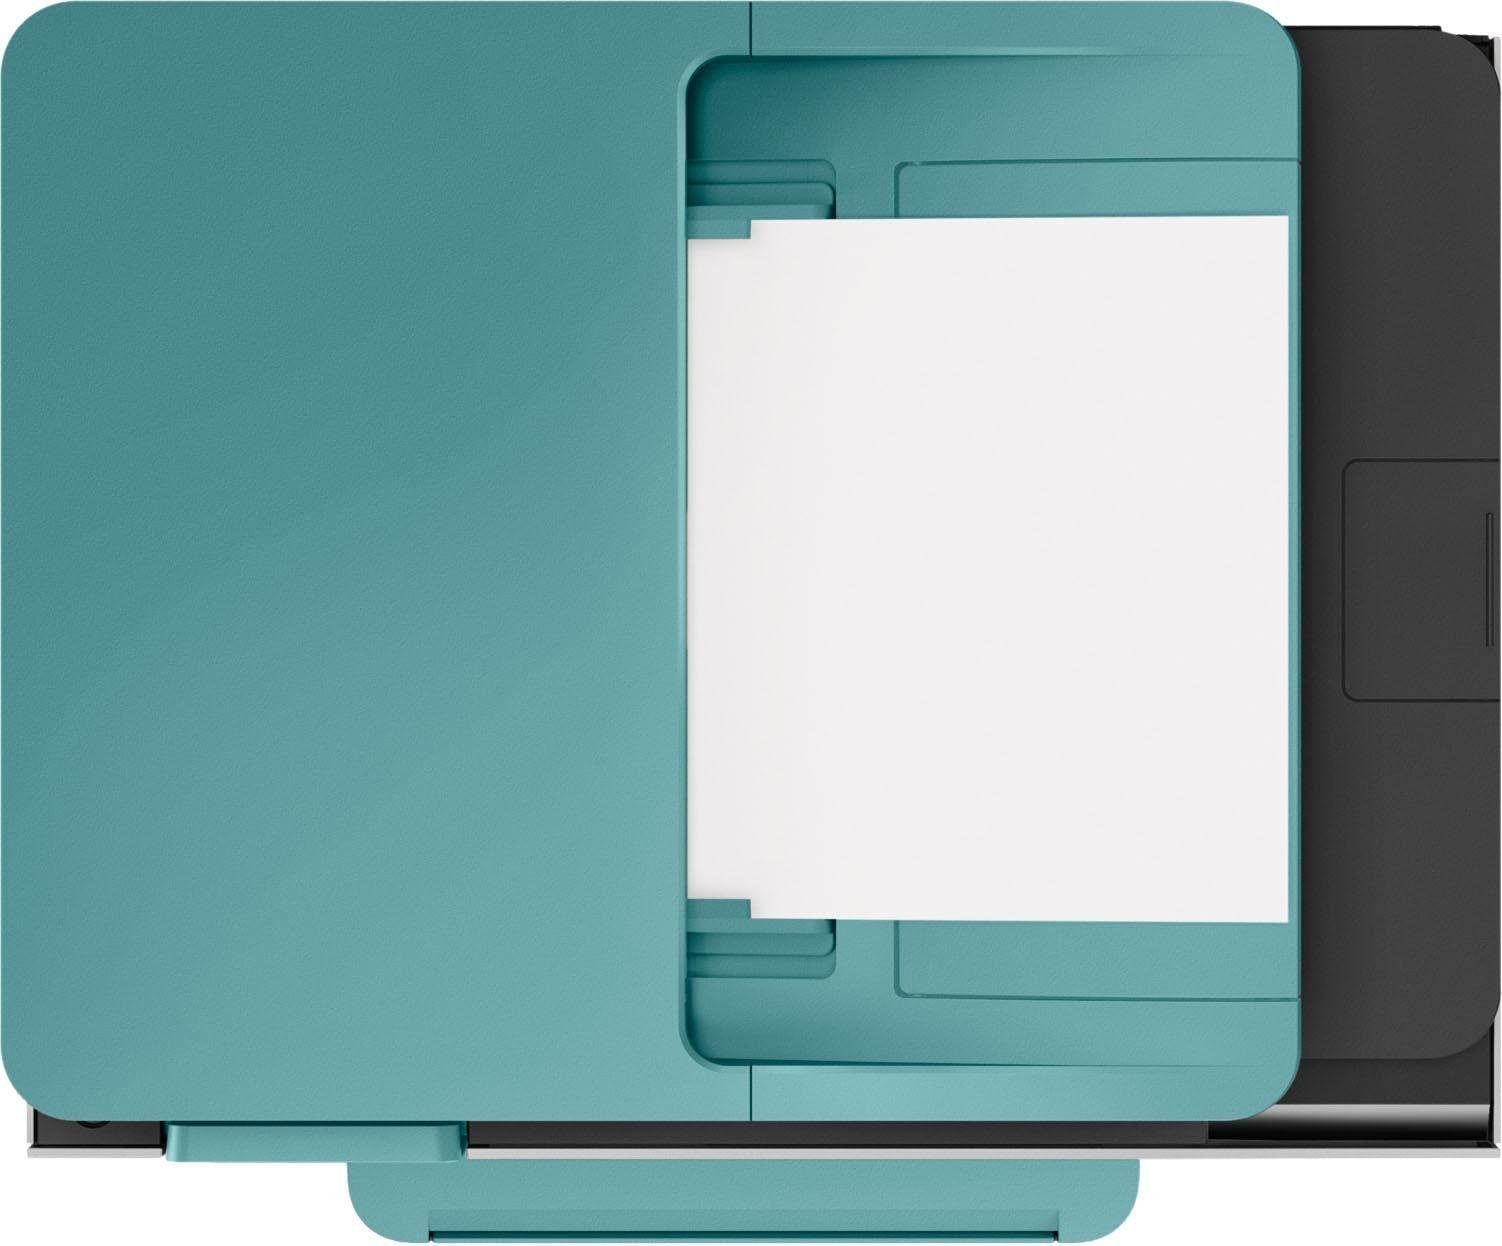 HP Multifunktionsdrucker »OfficeJet Pro 9015 AiO Printer«